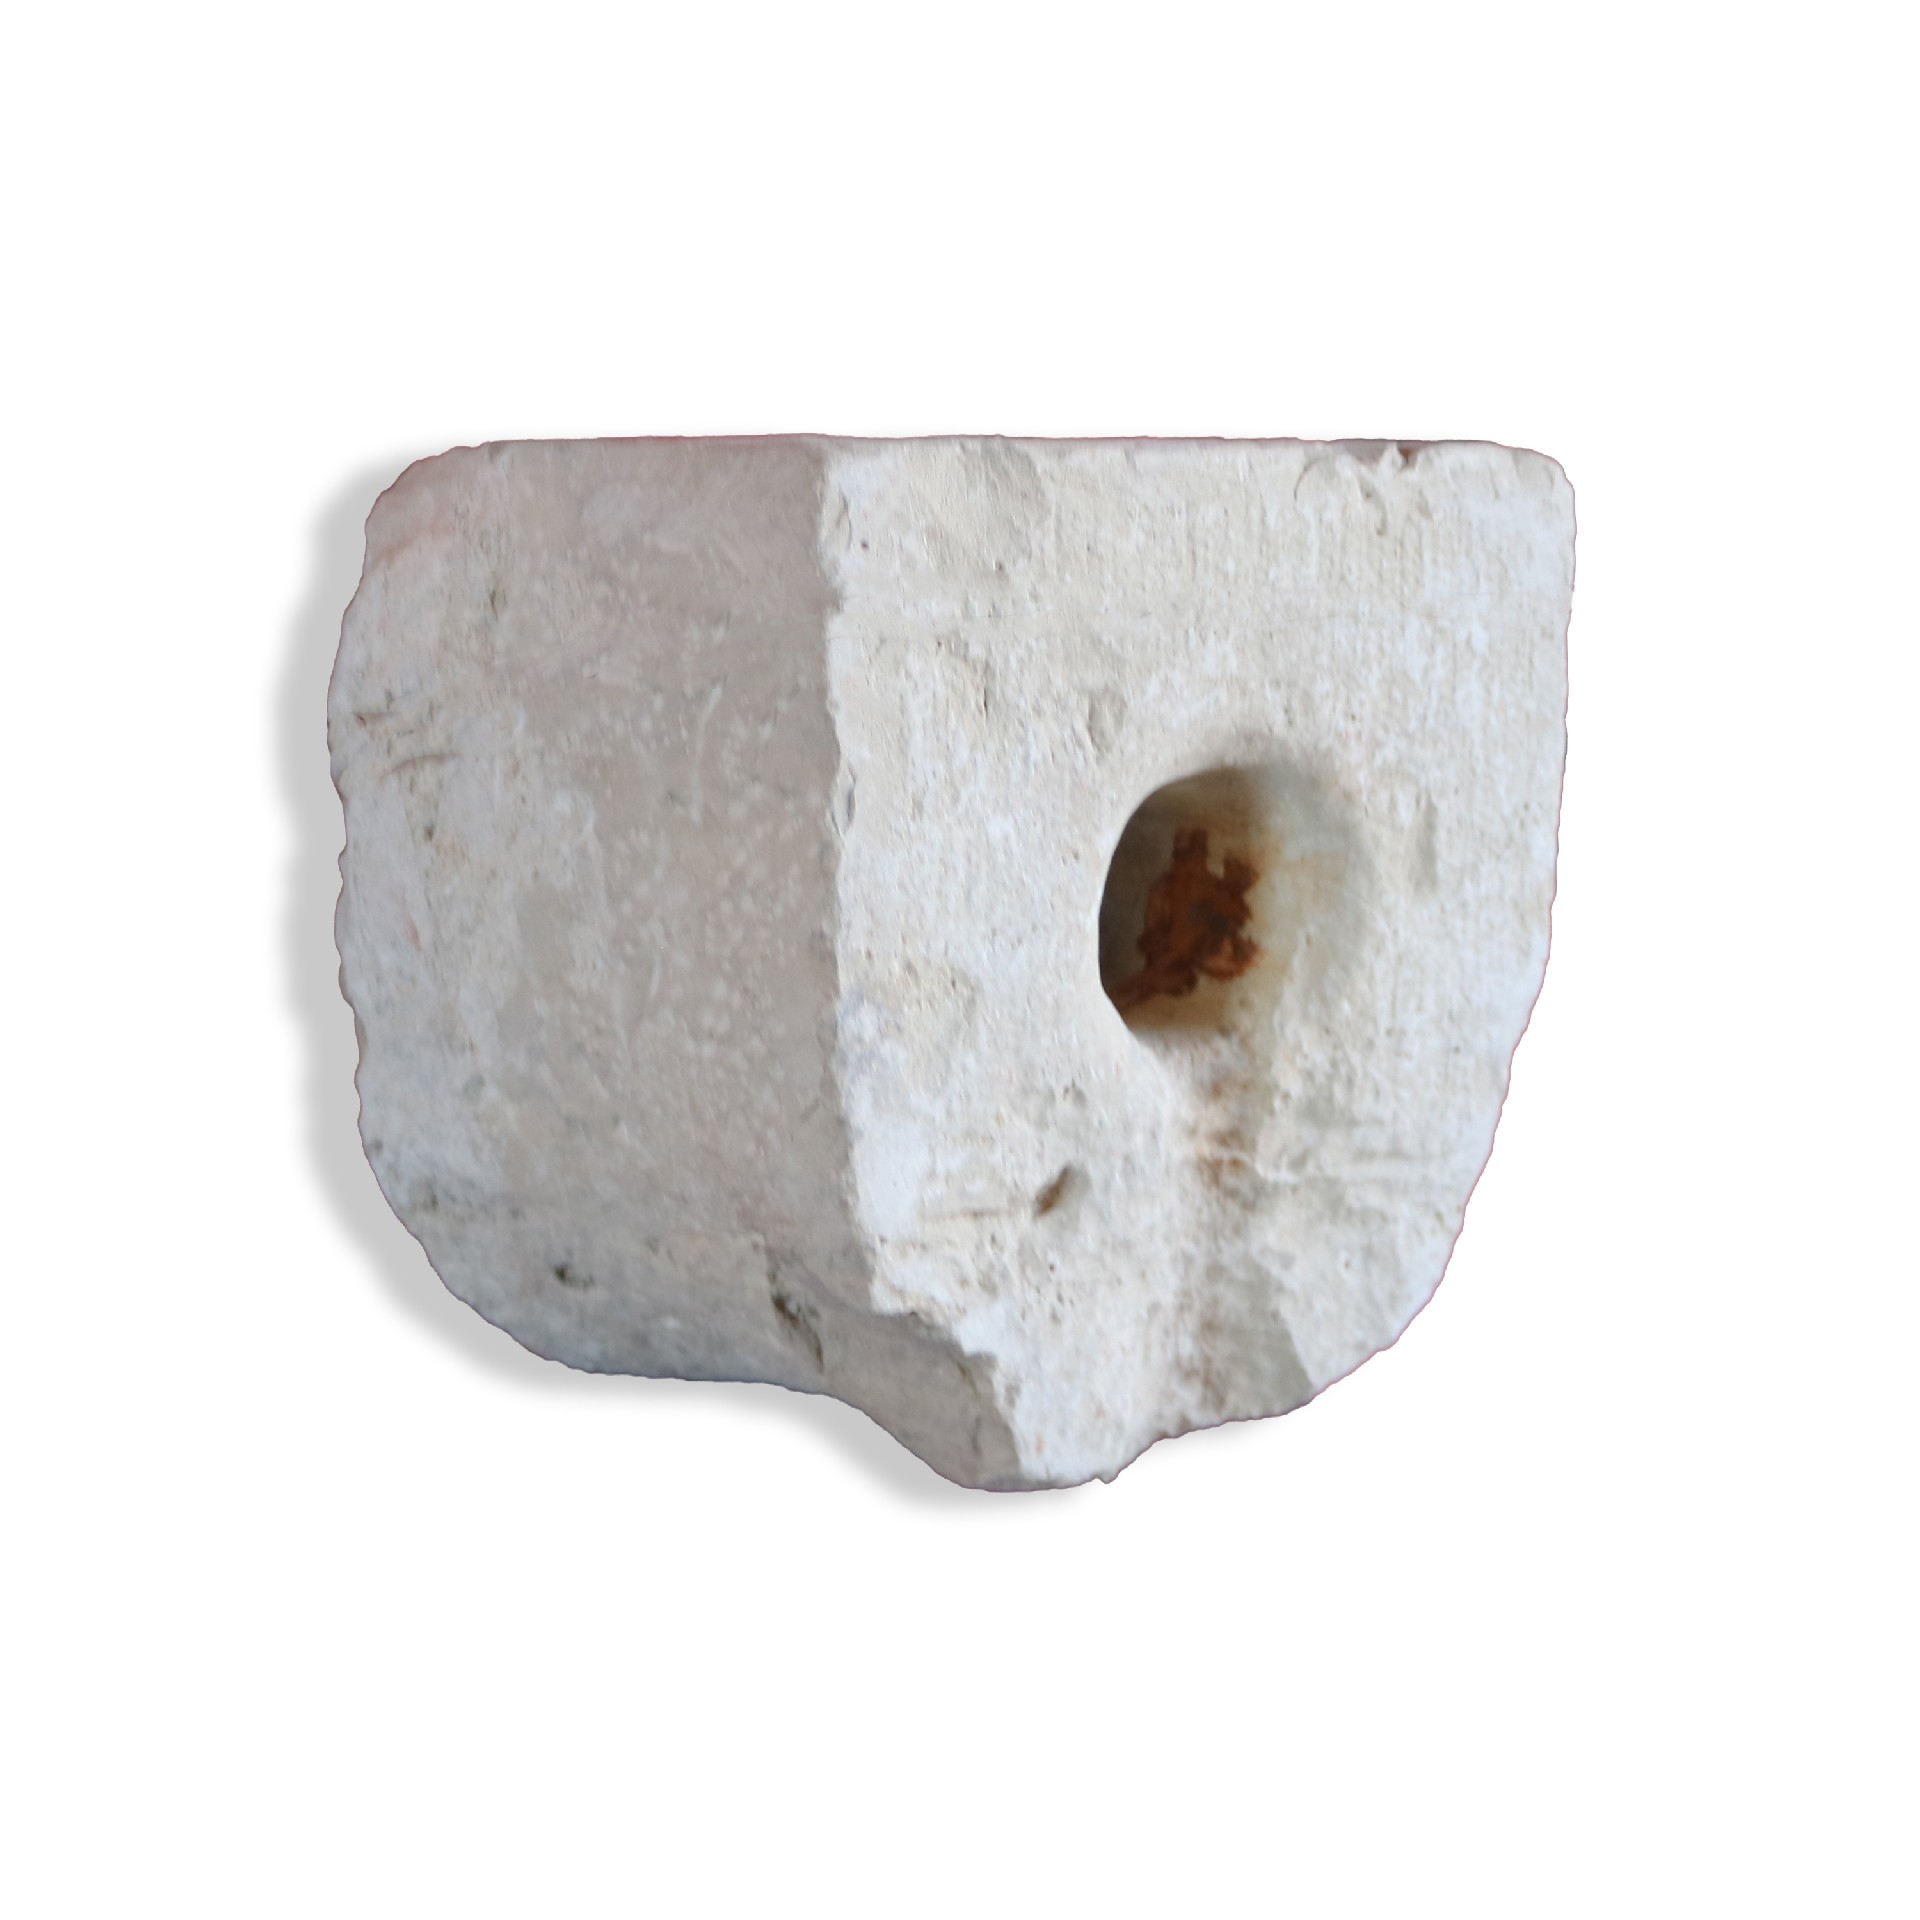 Antico pannello buttacqua in pietra. - Mascheroni Antichi - Arredo Giardino - Prodotti - Antichità Fiorillo